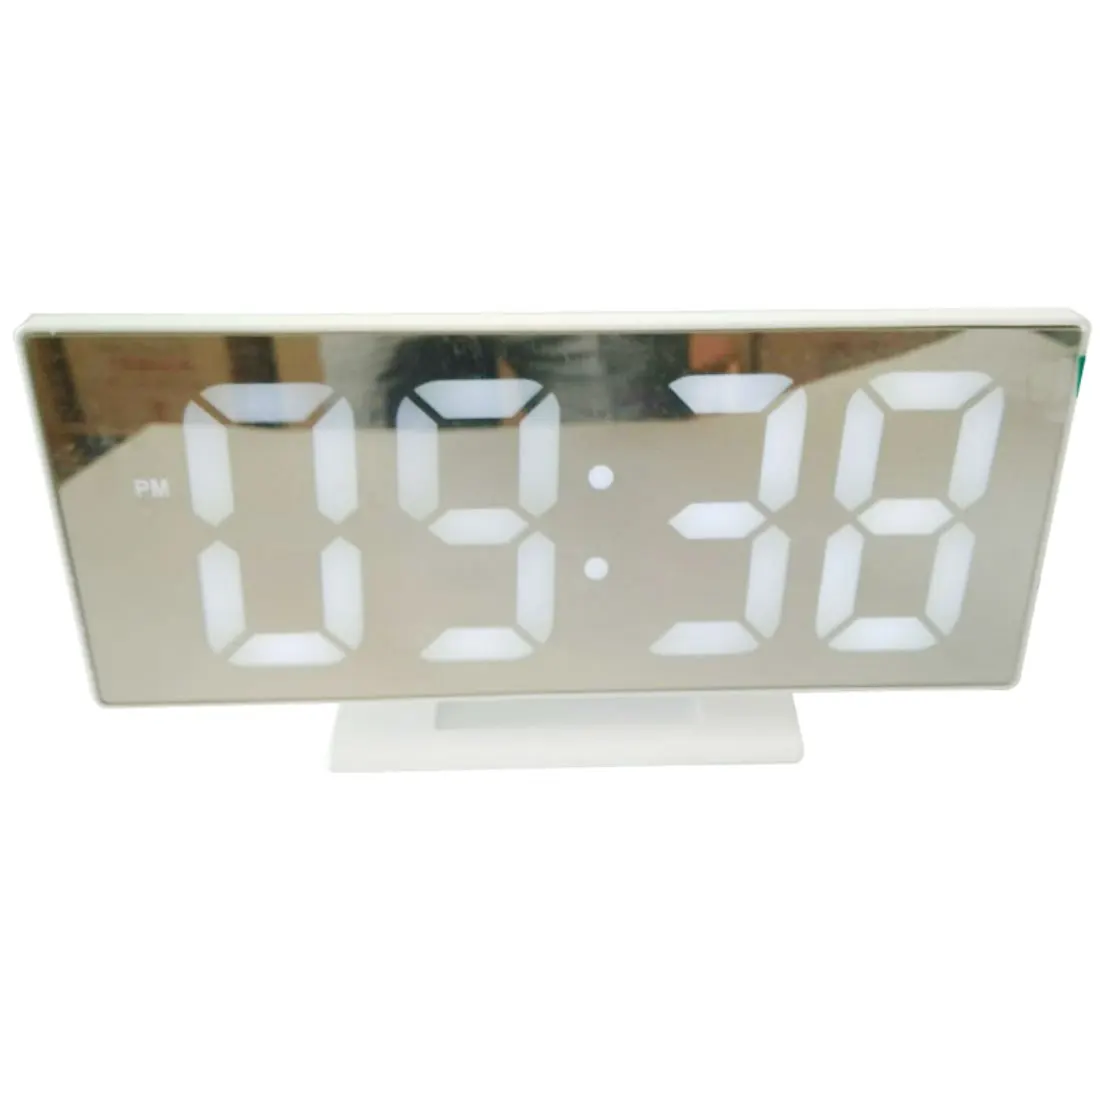 Многофункциональный светодиодный зеркальные часы цифровой будильник Повтор дисплей время ночного стола рабочего стола офиса дома спальни украшения - Цвет: W Shell and W Words